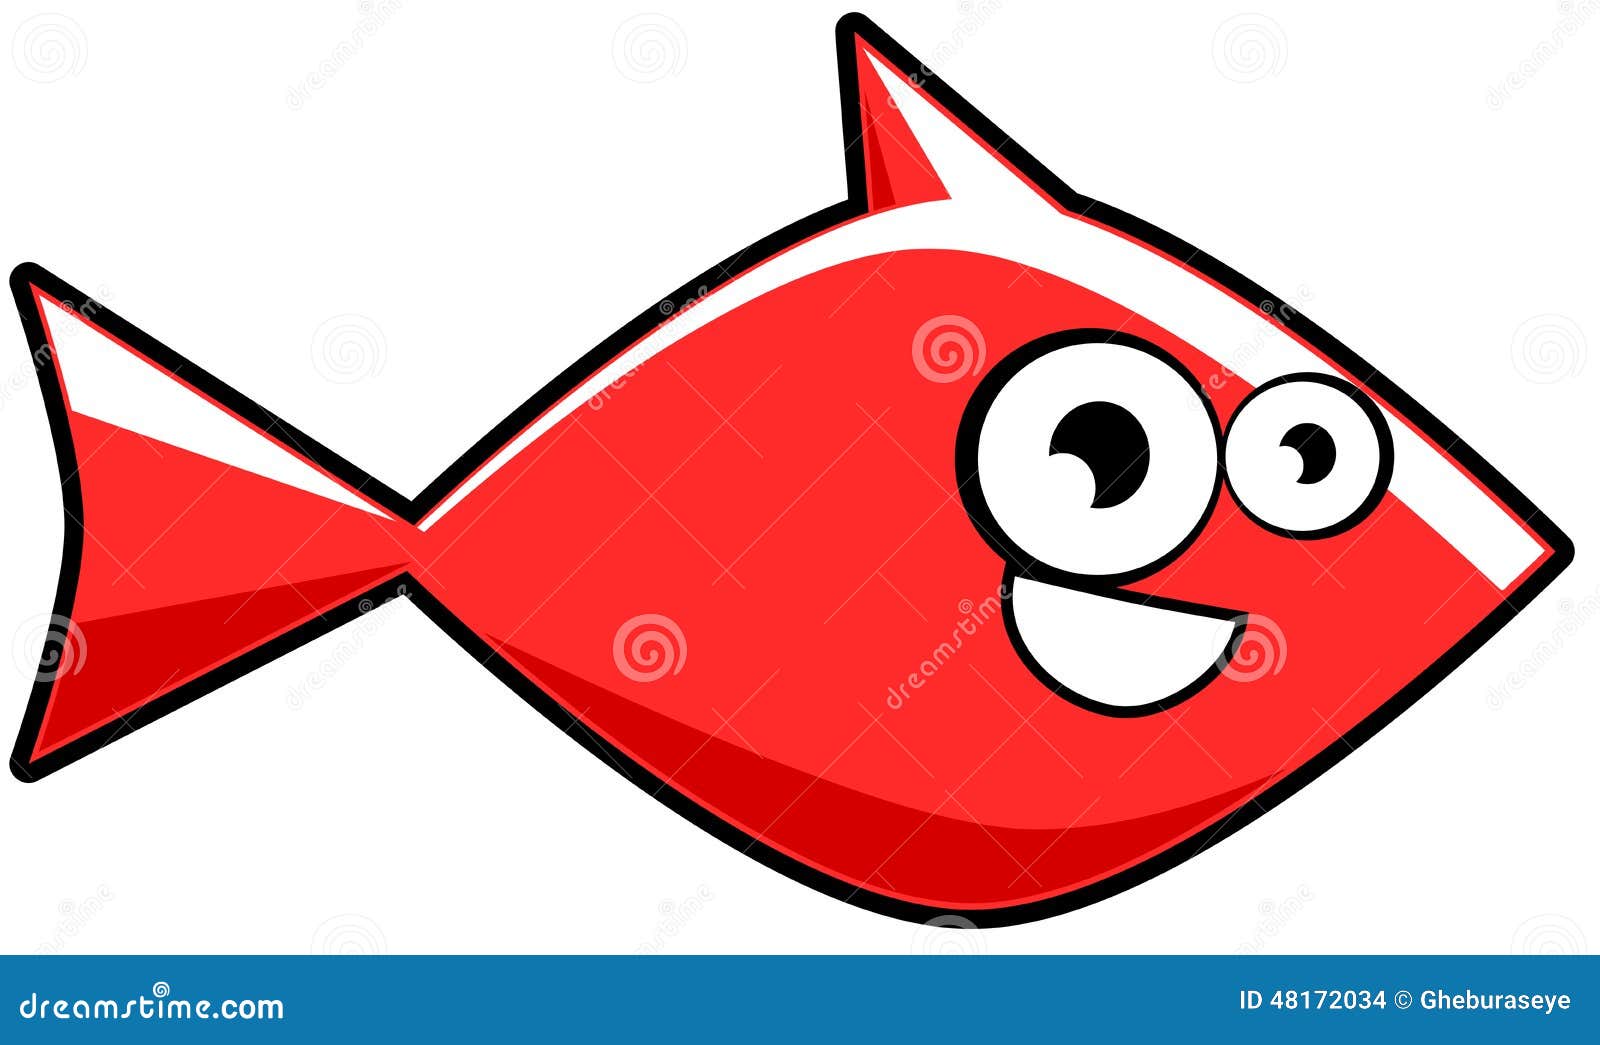 Cartoon goldfish isolated stock vector. Image of goldfish - 48172034